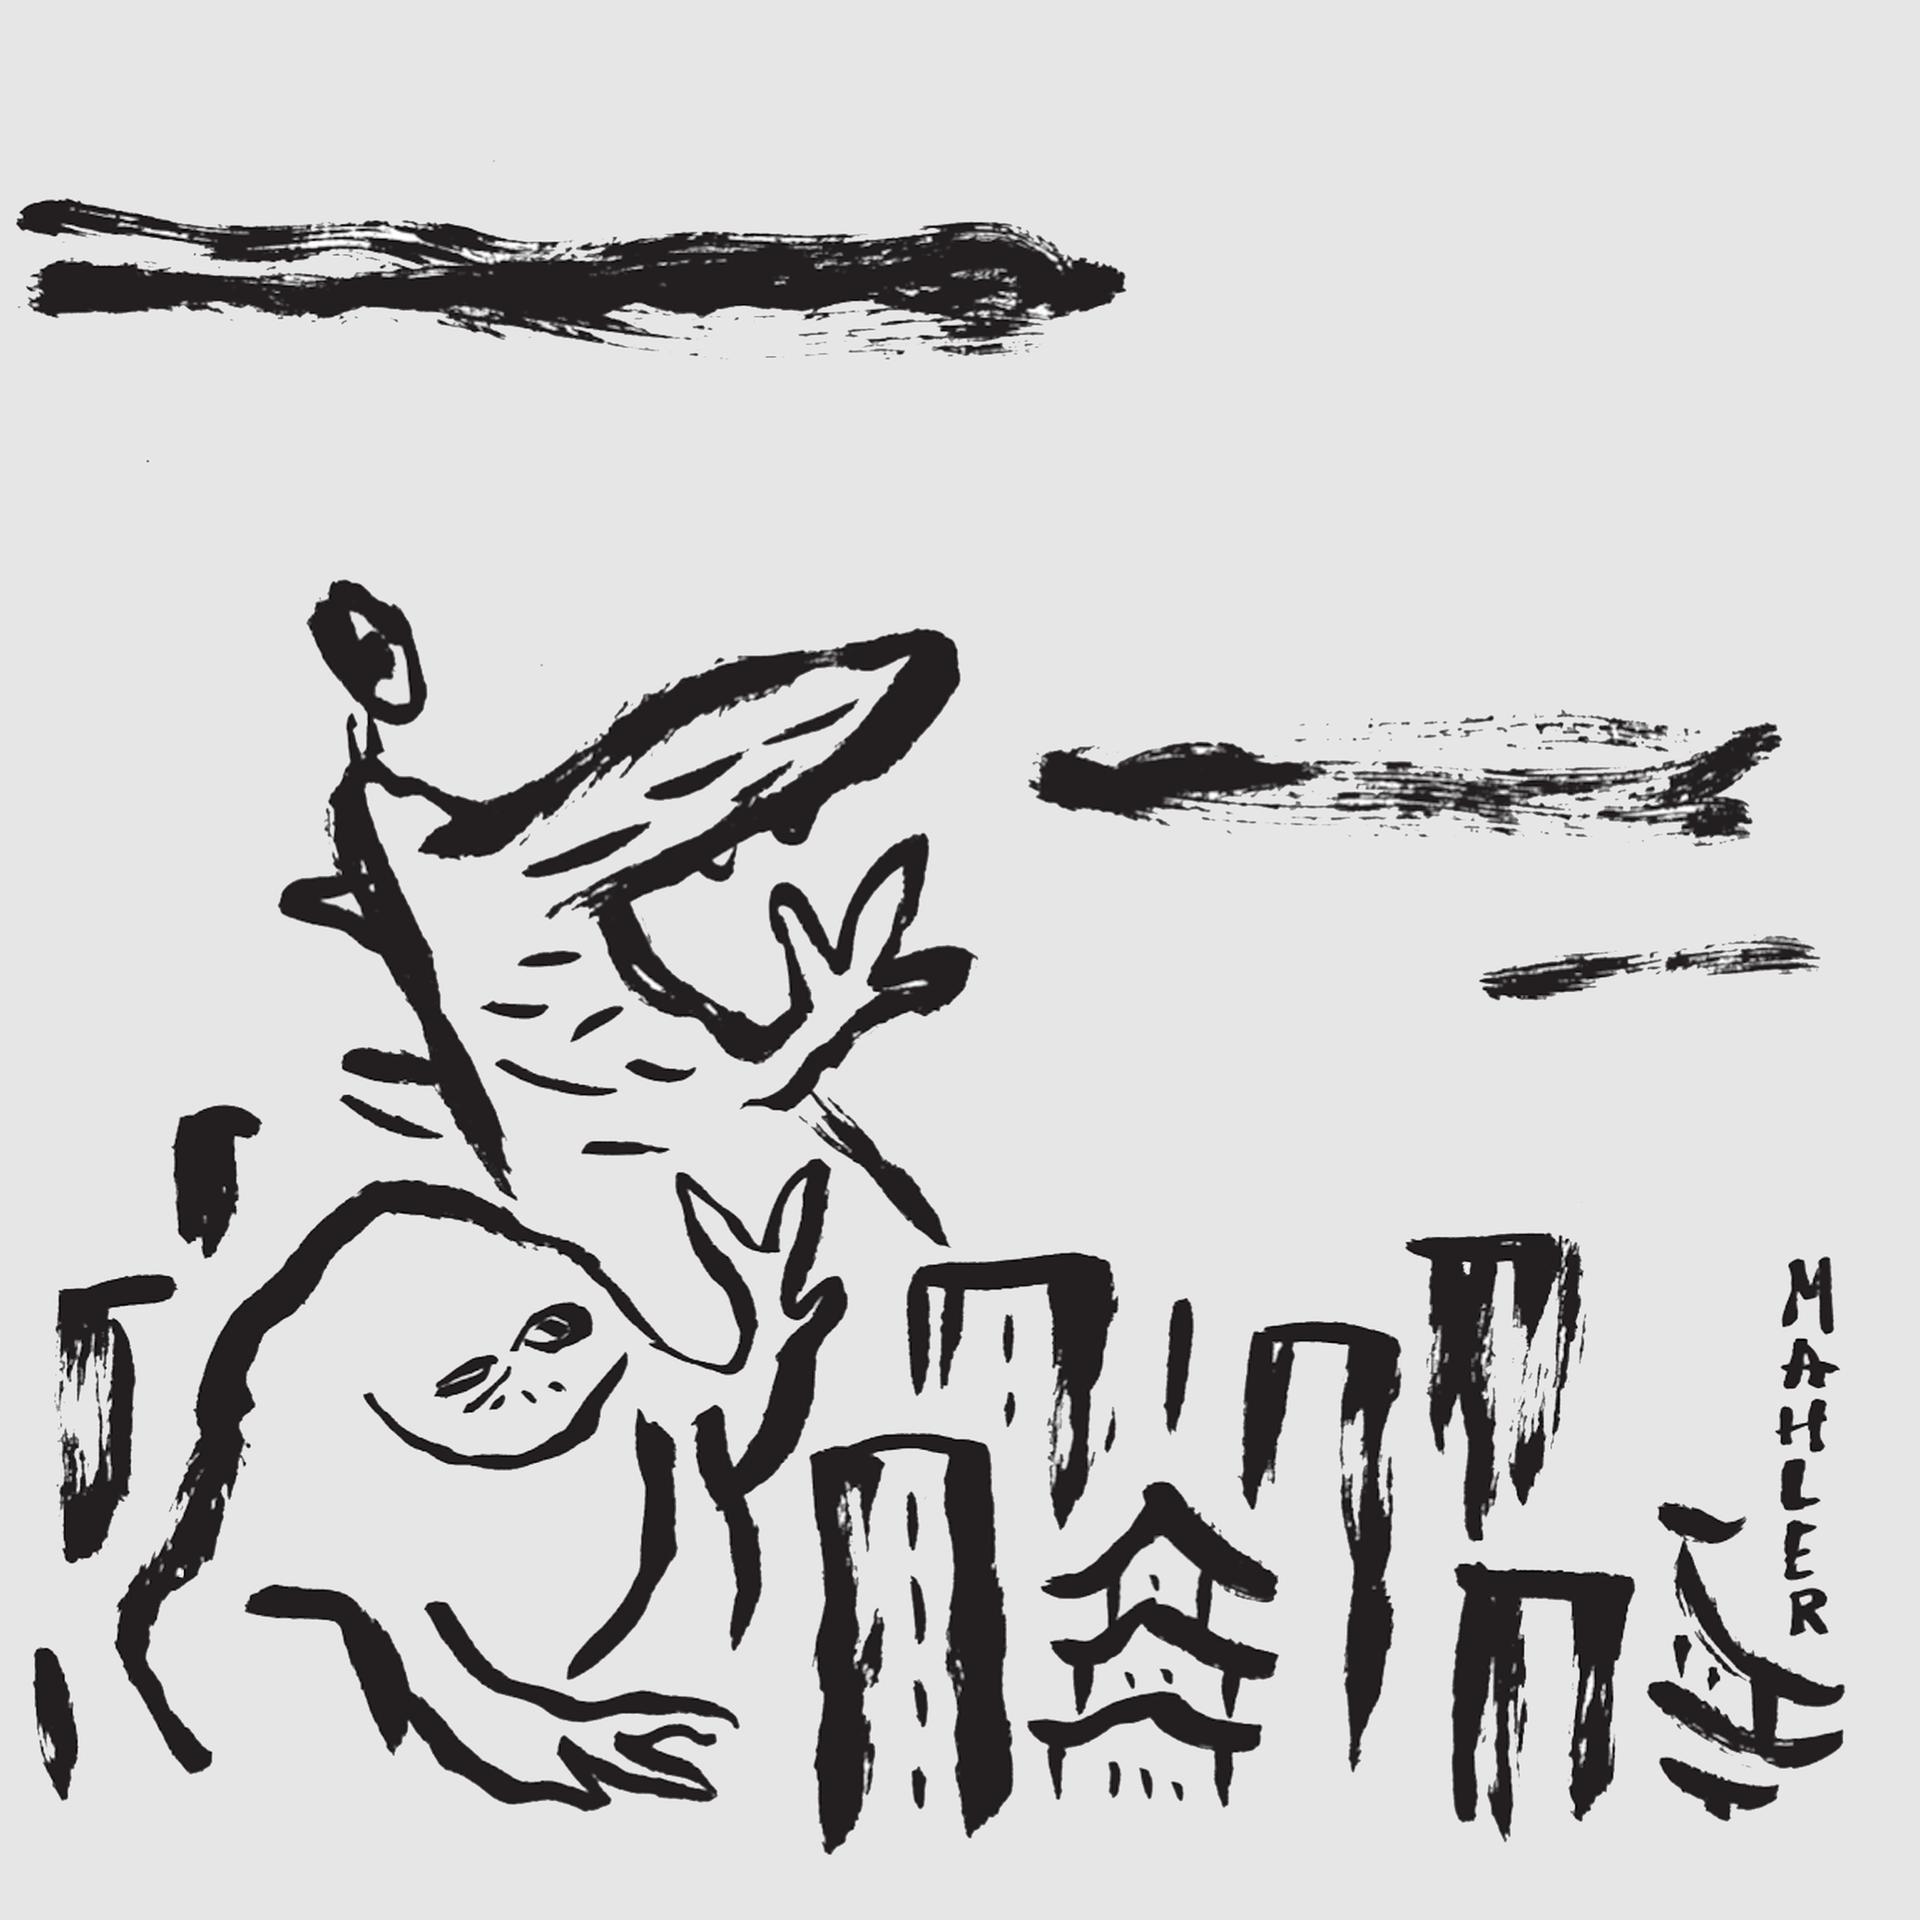 Die Zeichnung aus dem Comic zeigt einen Frosch und Godzilla zwischen den Hochhäusern von Tokio, gezeichnet in dicken schwarzen Tuschestrichen.